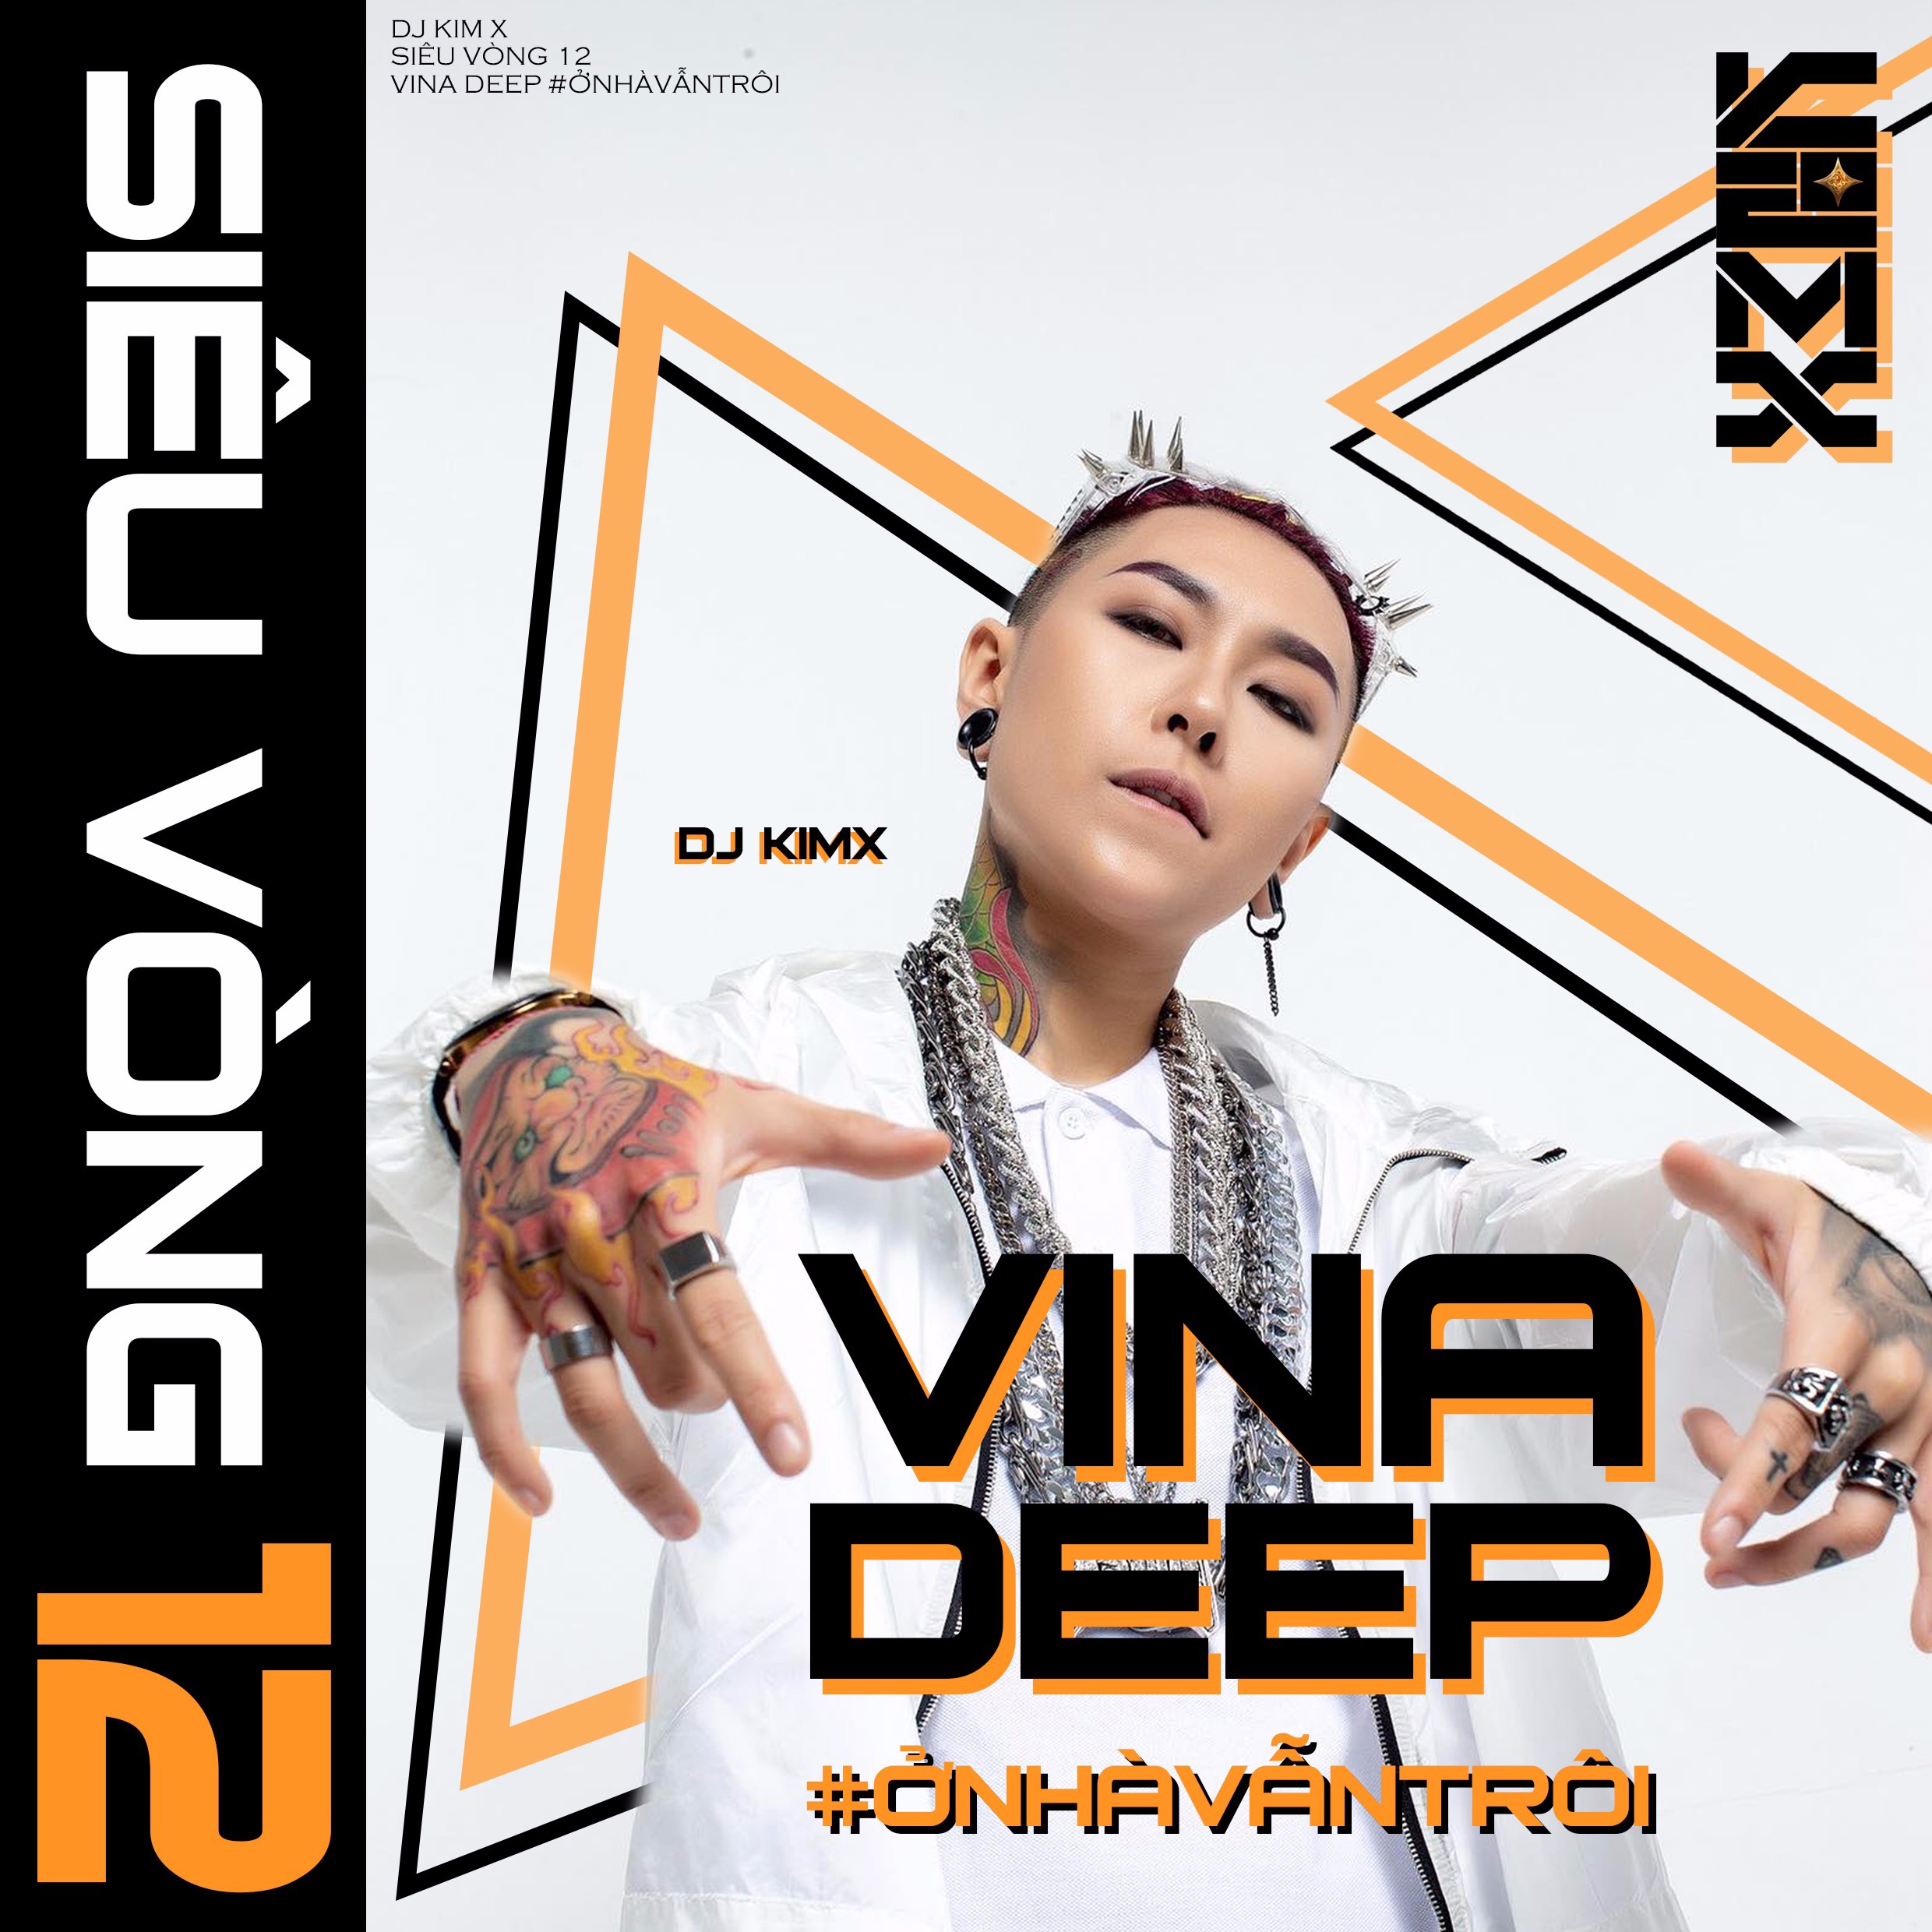 Изтегли #ỞNHÀVẪNTRÔI --- DJ KIMX --- MIXSET KIMX SIÊU VÒNG 12 --- VINADEEP